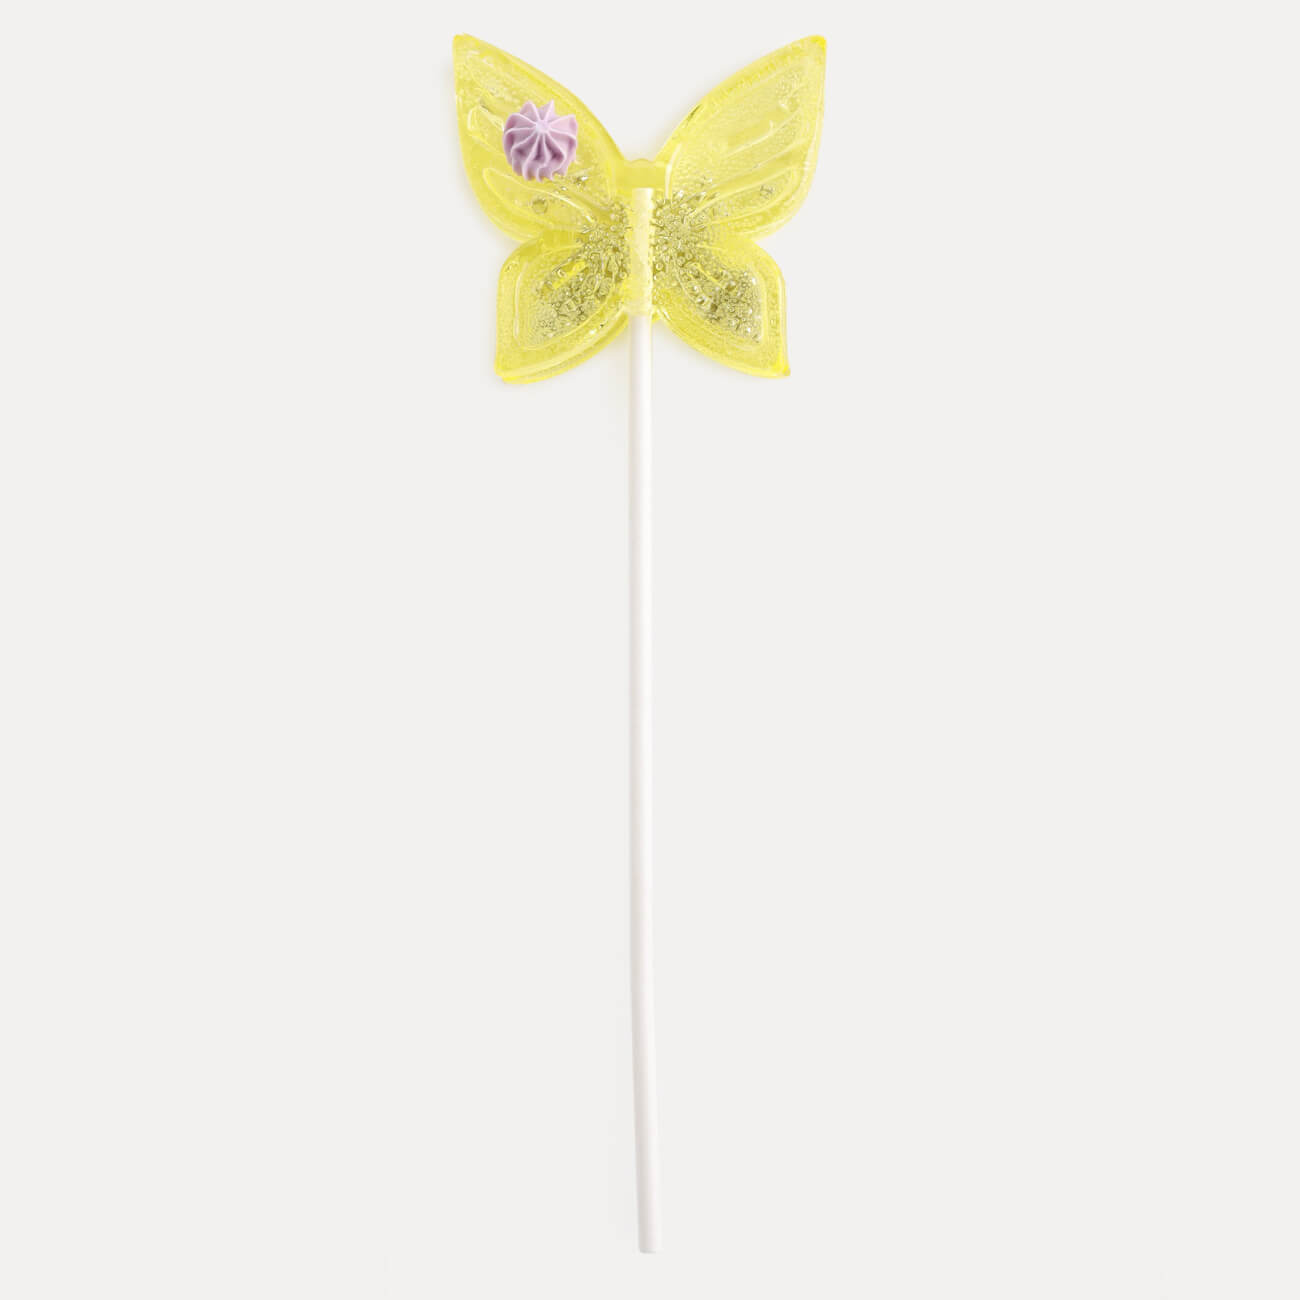 Леденец, 30 гр, погремушка, на палочке, изомальт, желтый, Бабочка, Butterfly изображение № 1